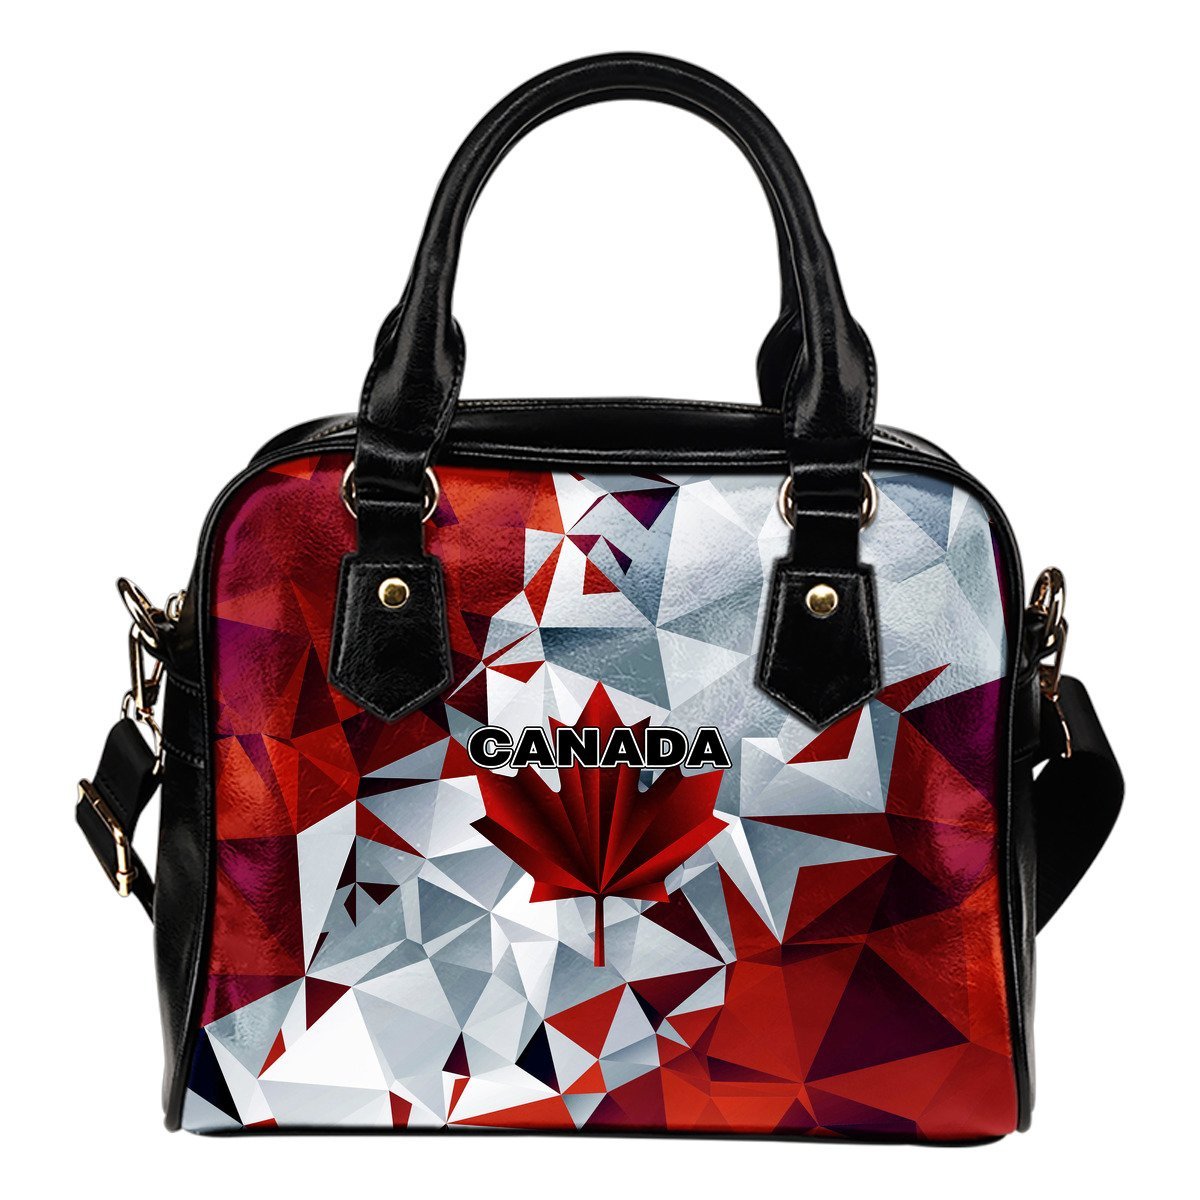 canada-shoulder-handbag-polygon-version